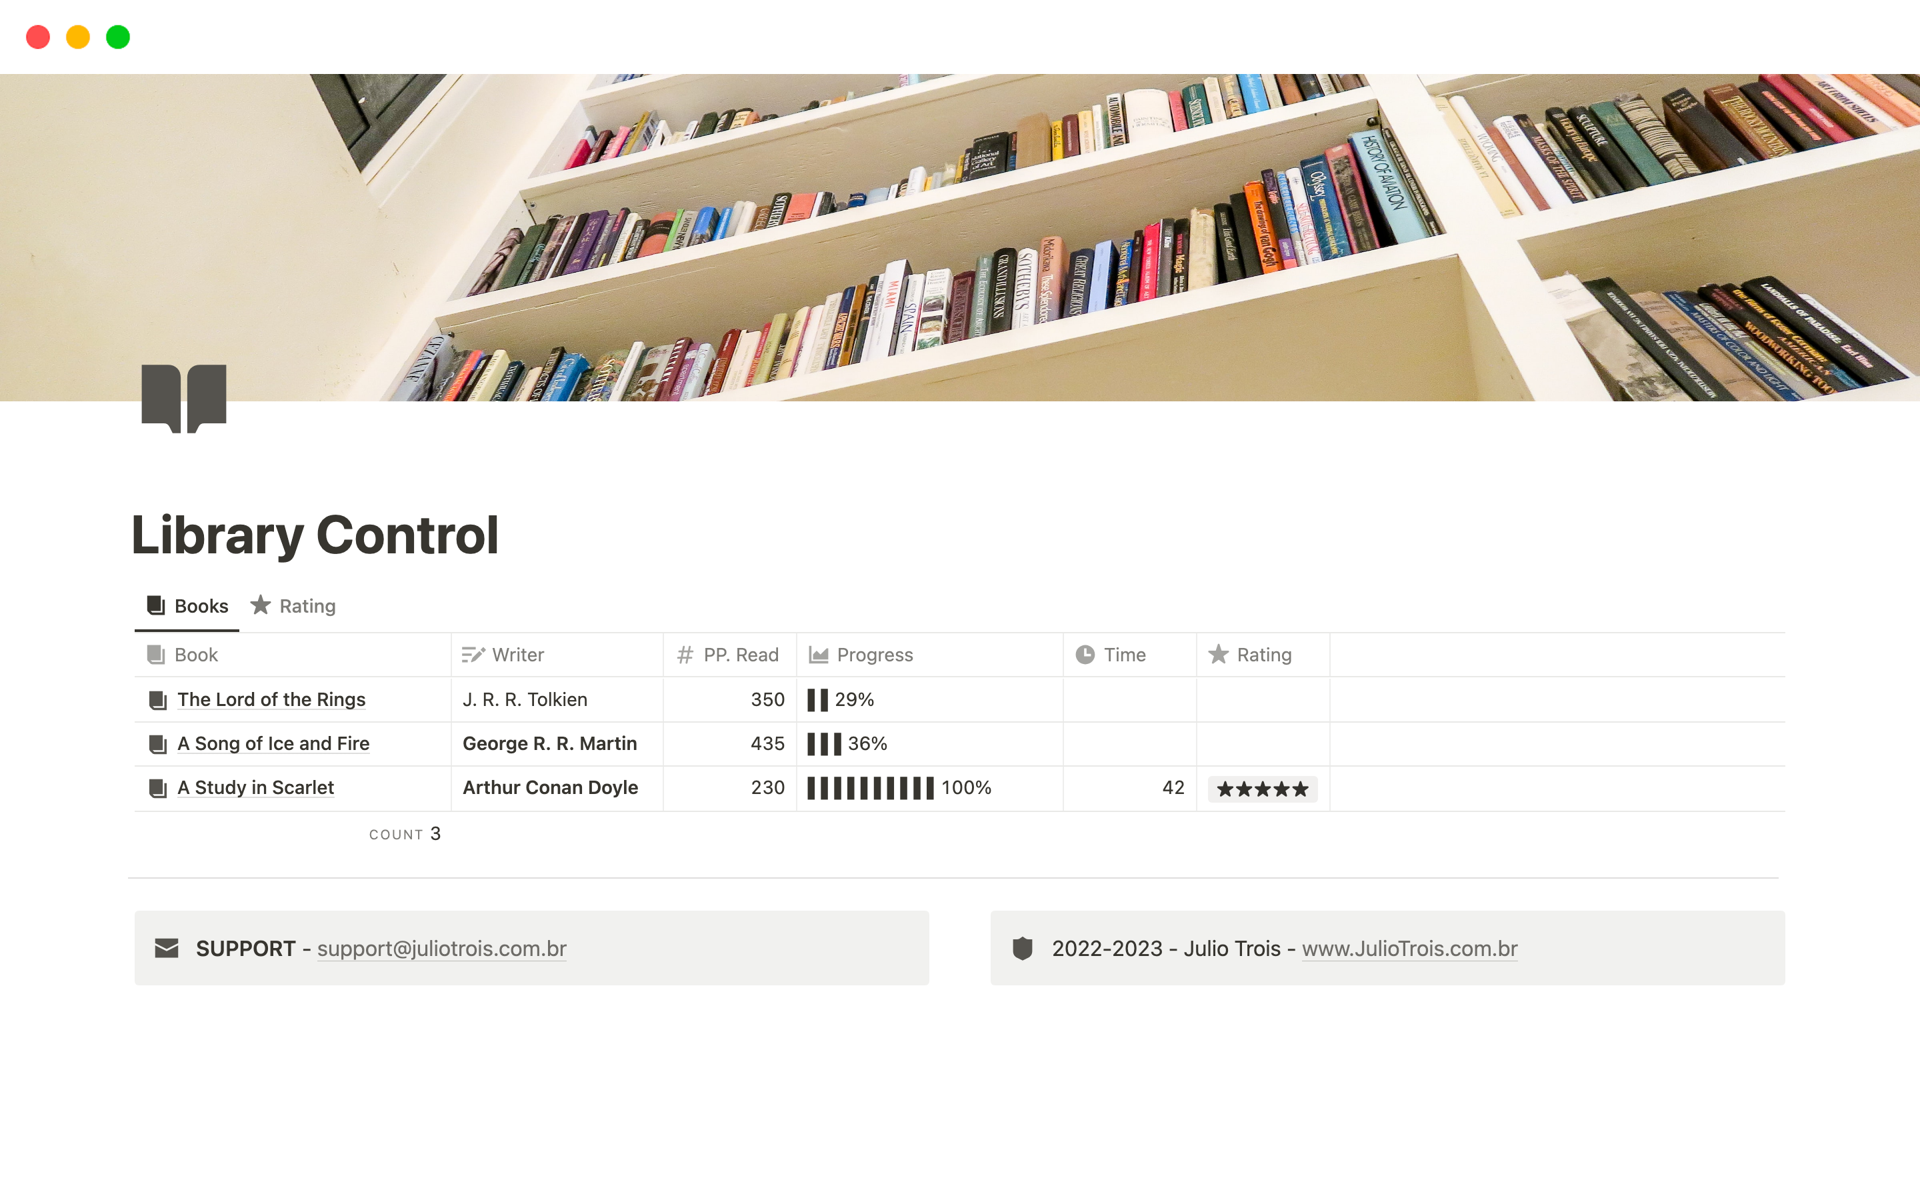 Aperçu du modèle de Library Control